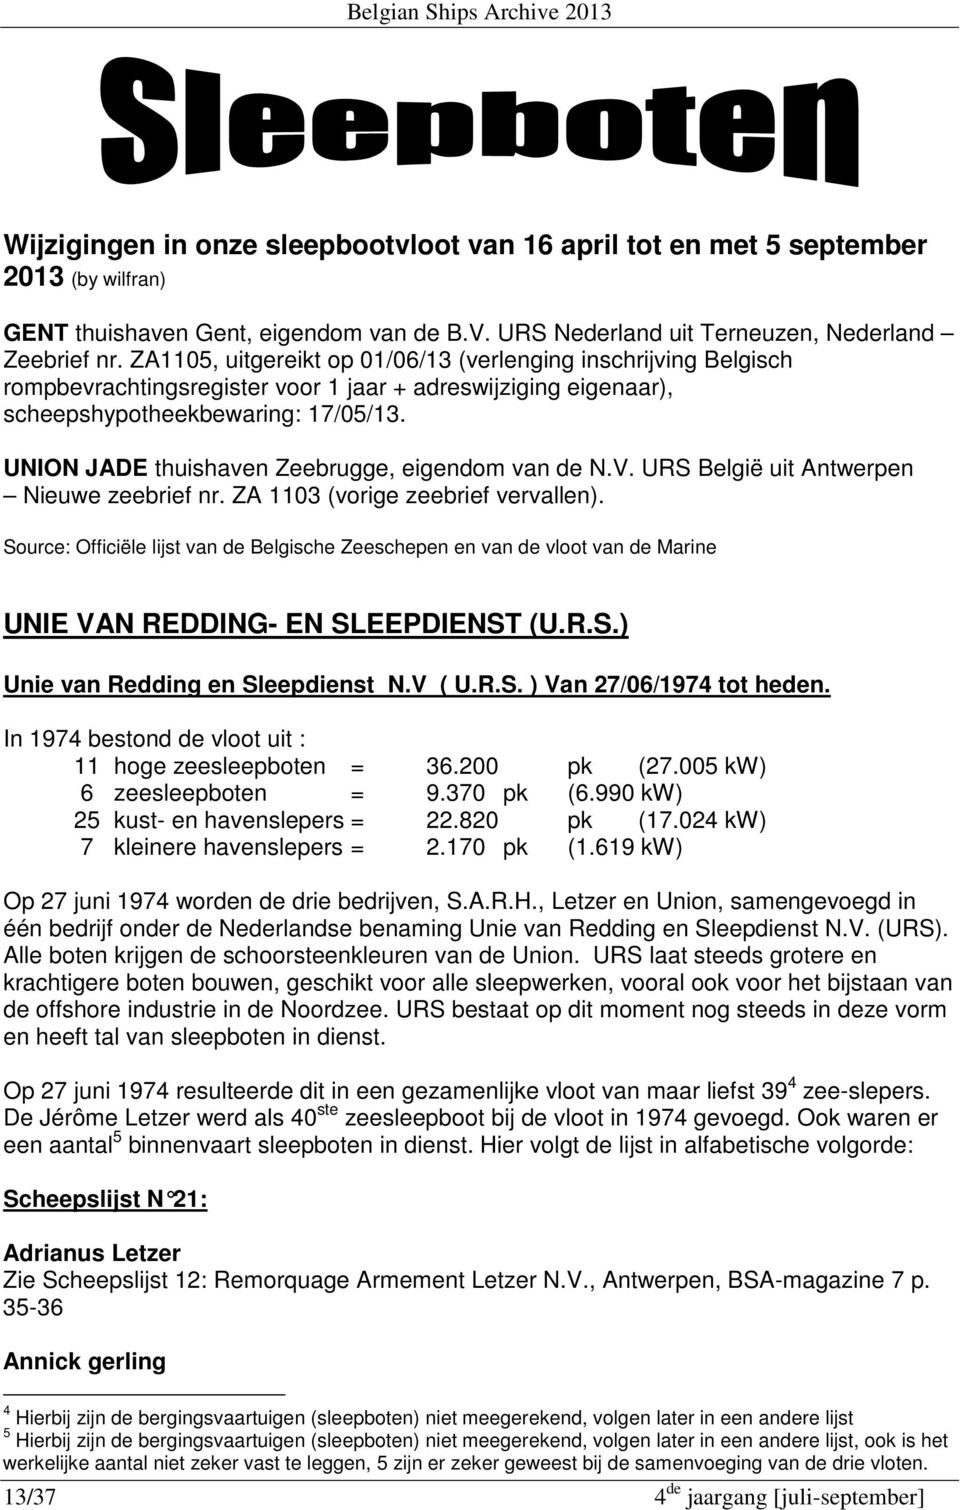 UNION JADE thuishaven Zeebrugge, eigendom van de N.V. URS België uit Antwerpen Nieuwe zeebrief nr. ZA 1103 (vorige zeebrief vervallen).